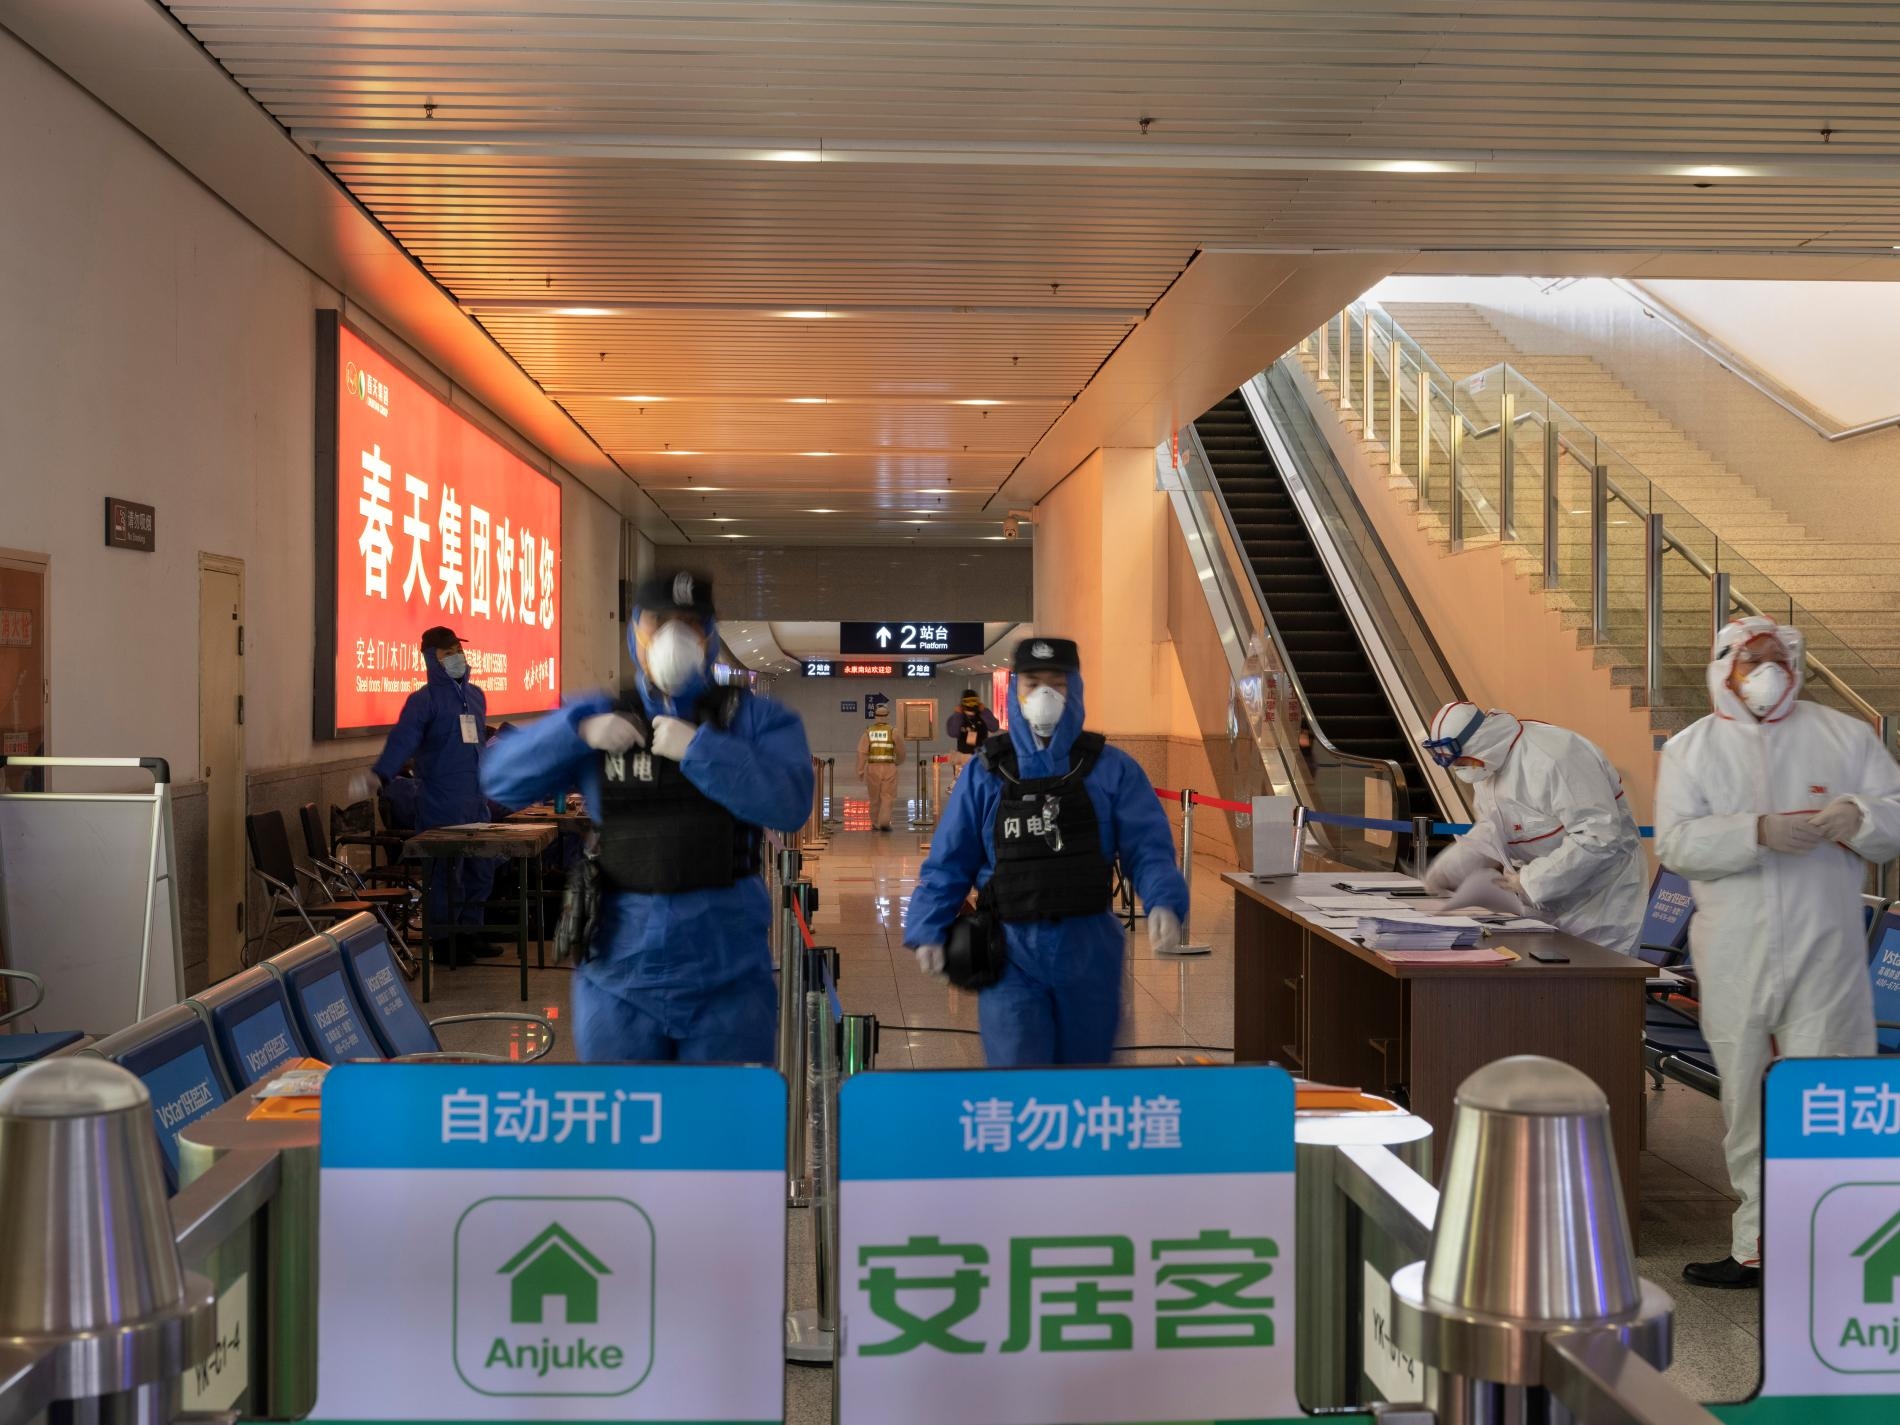 2月9日，警察與衛生人員守在高鐵站其中一處出口。全國各地還在營運的車站，每個出入口都要幫旅客量體溫。旅客若是發燒超過攝氏37.3度，就要被帶到健康機構。PHOTOGRAPH BY ROBAN WANG, NATIONAL GEOGRAPHIC